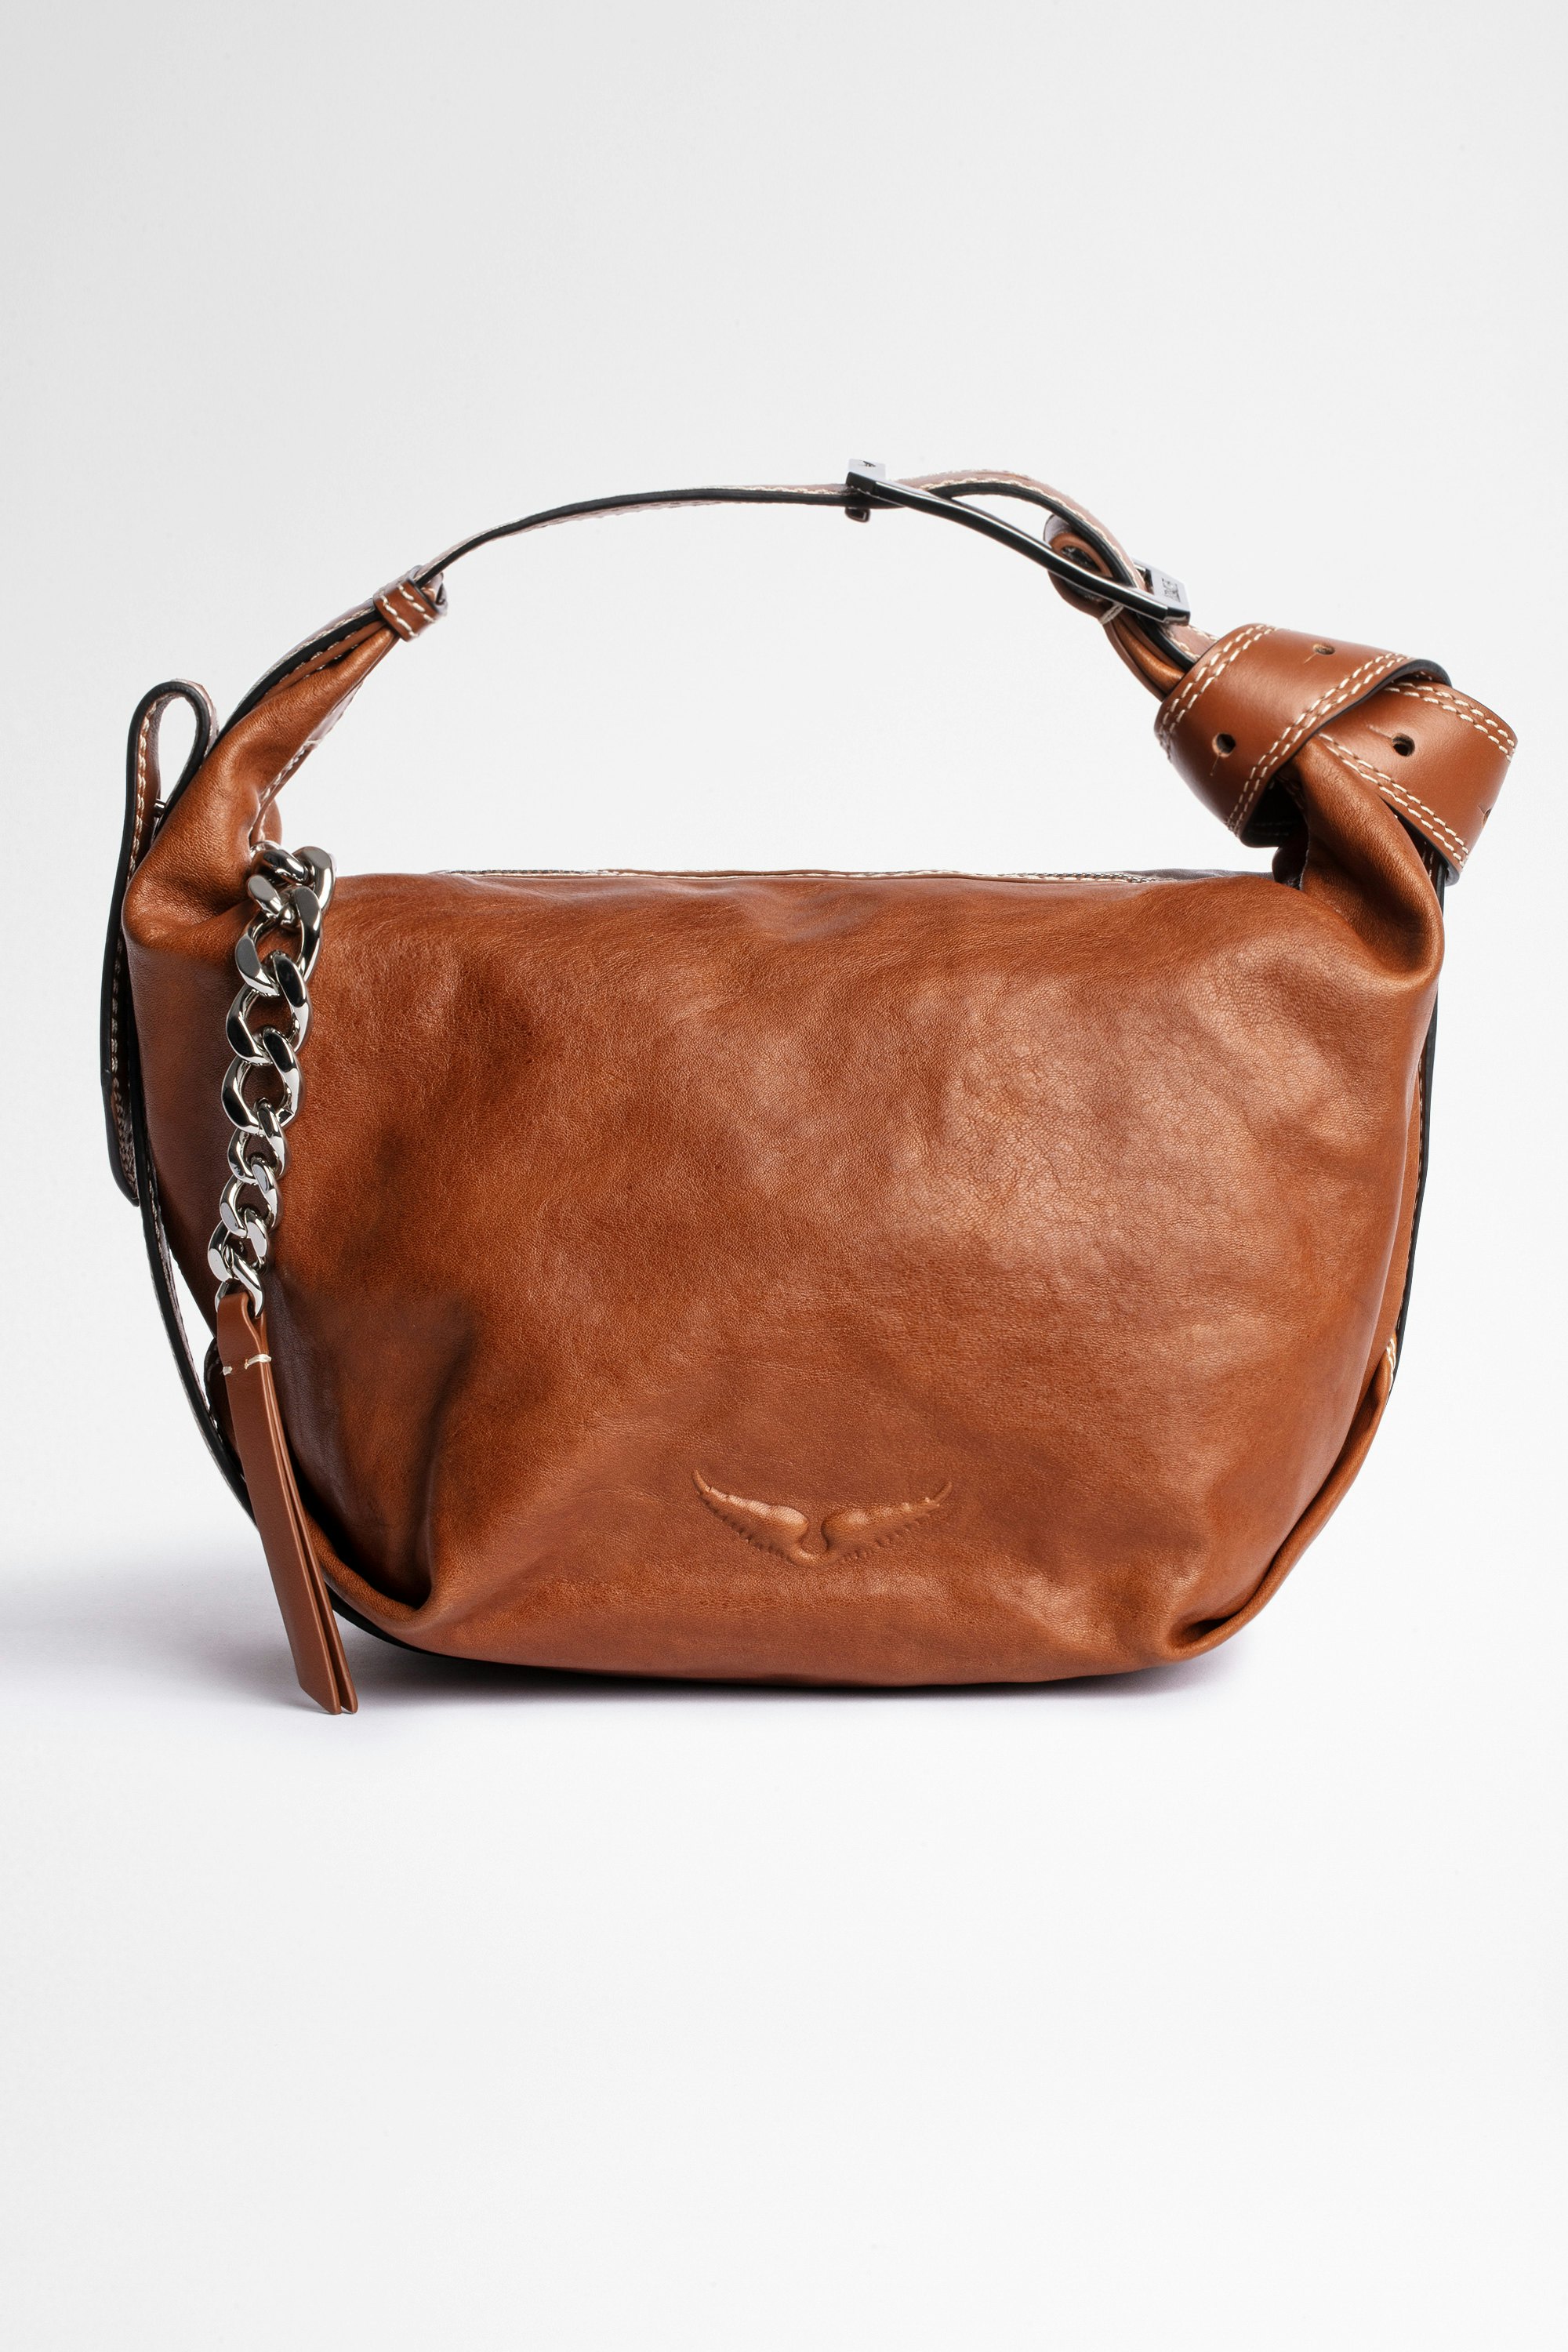 Handtasche Le Cecilia Damentasche aus kamelfarbenem Leder, an der Schulter oder crossbody zu tragen